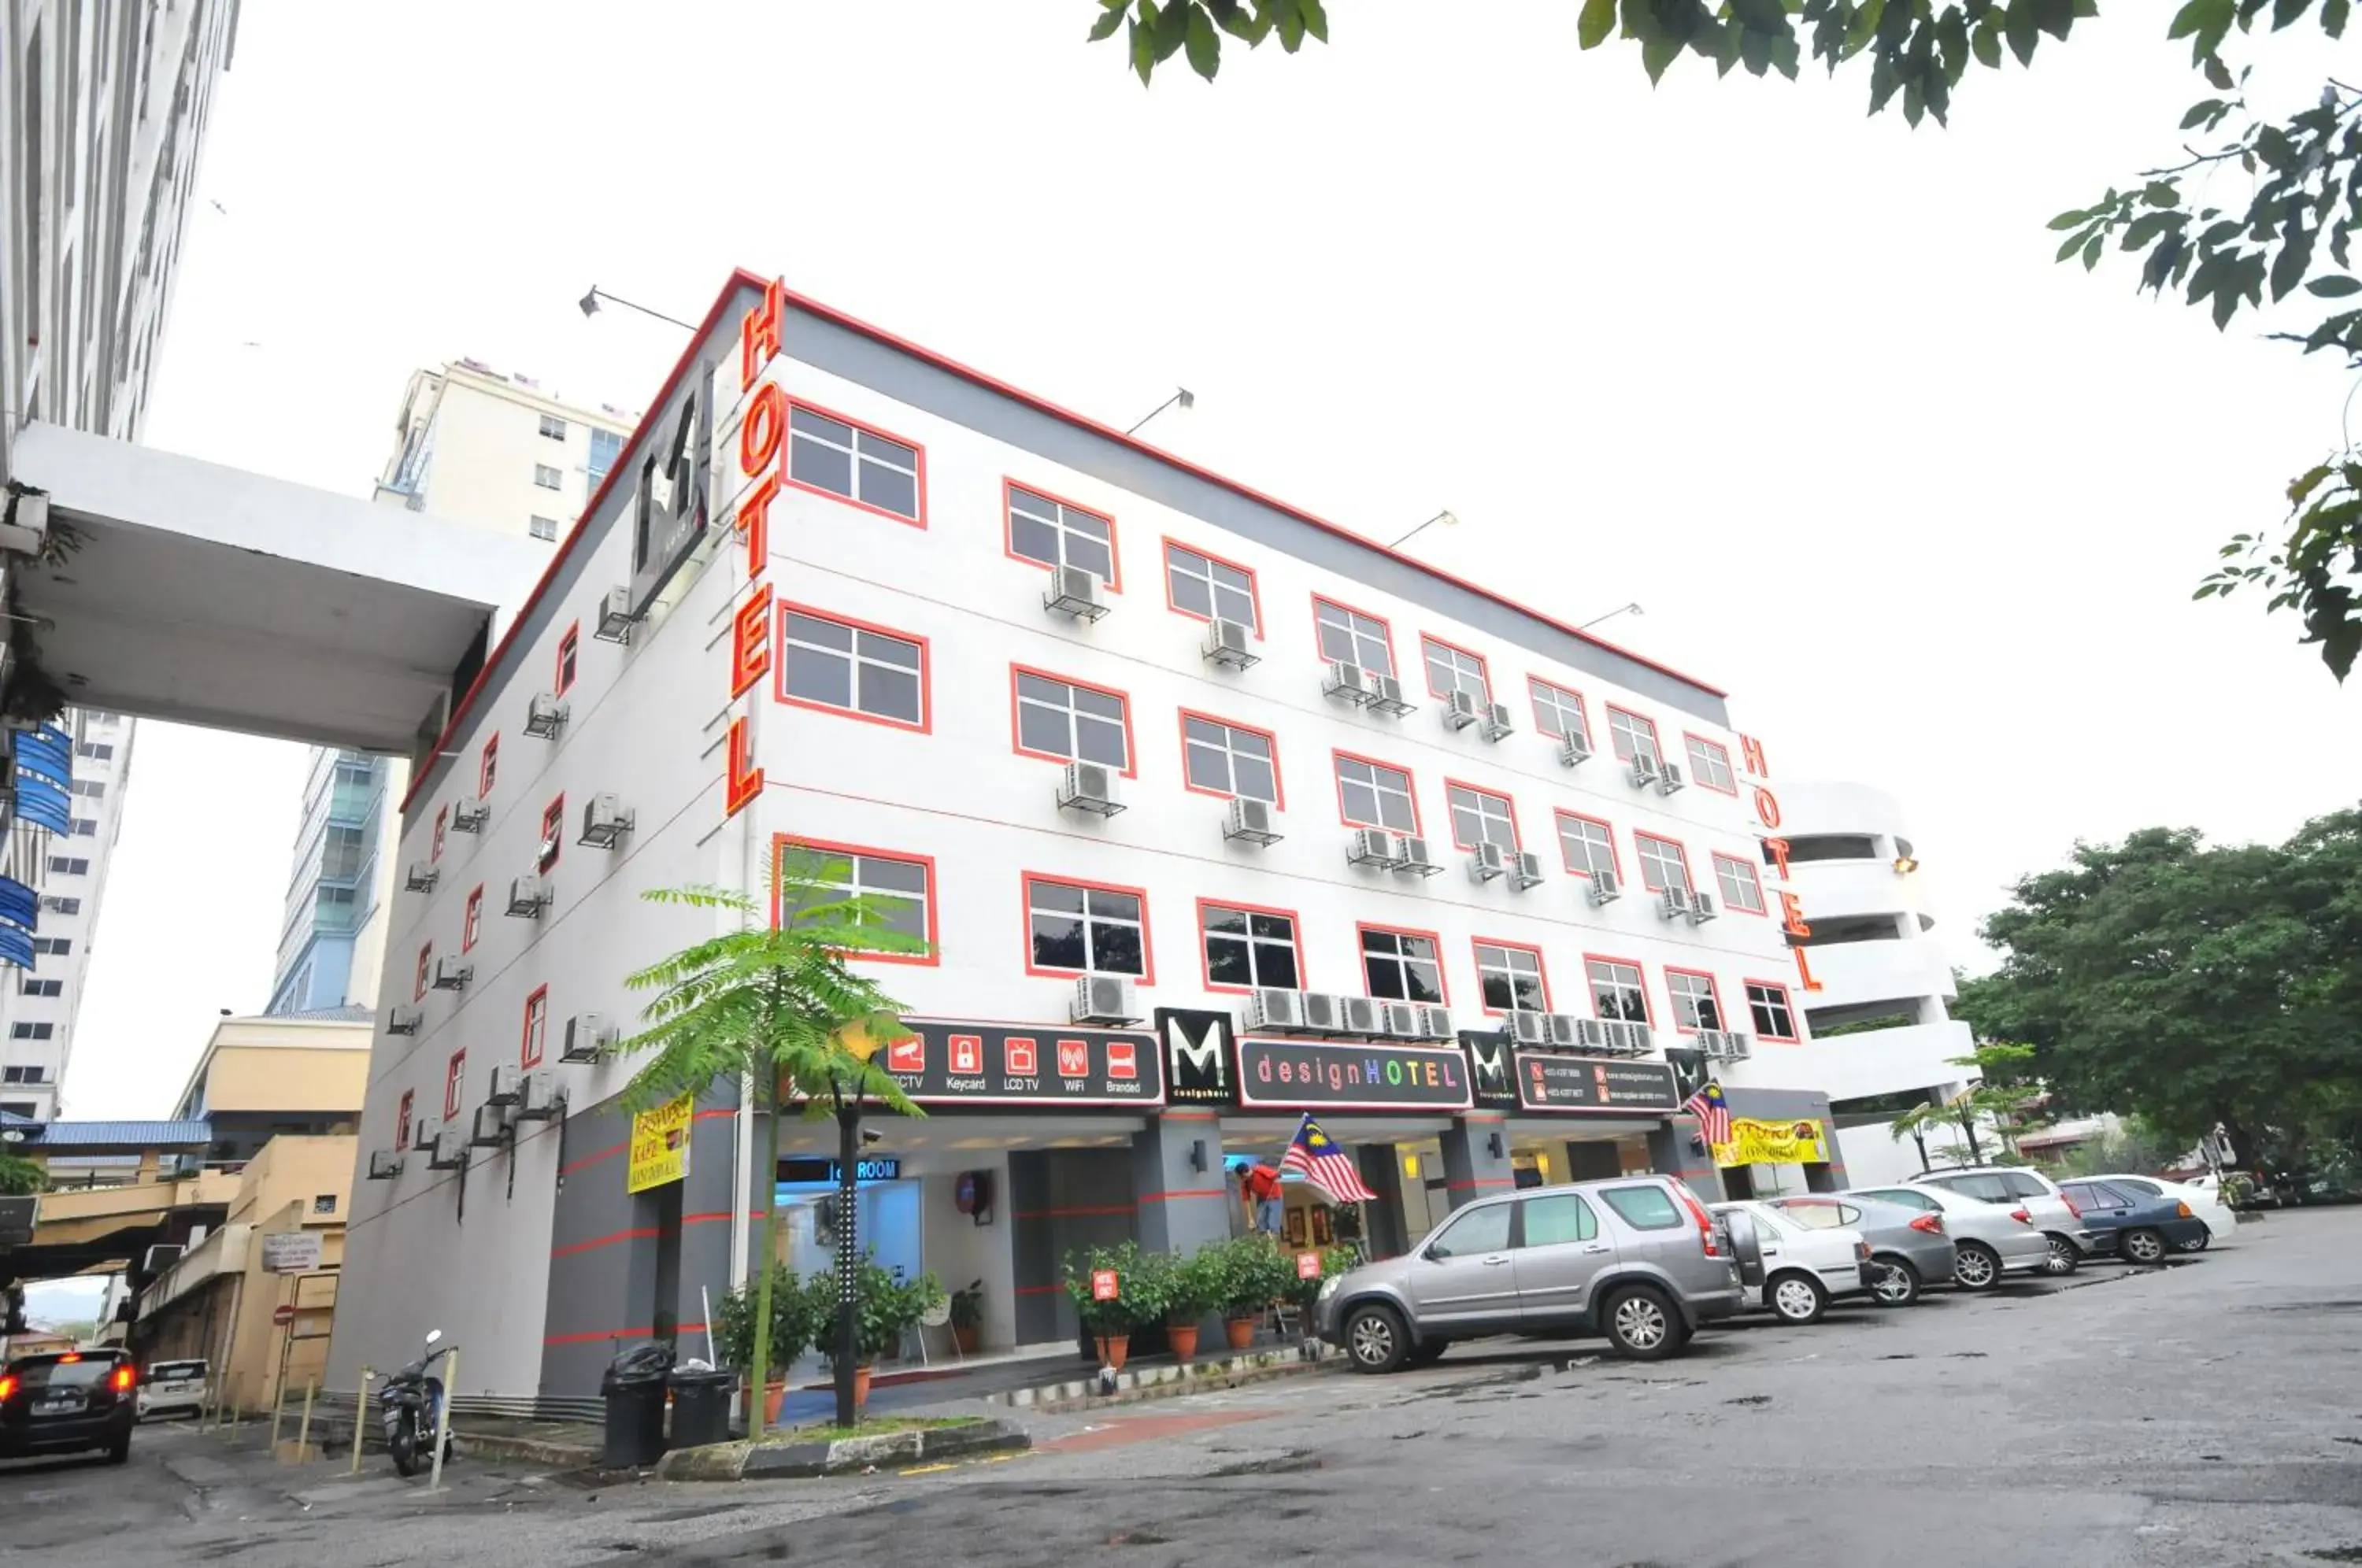 Property Building in M Design Hotel - Pandan Indah